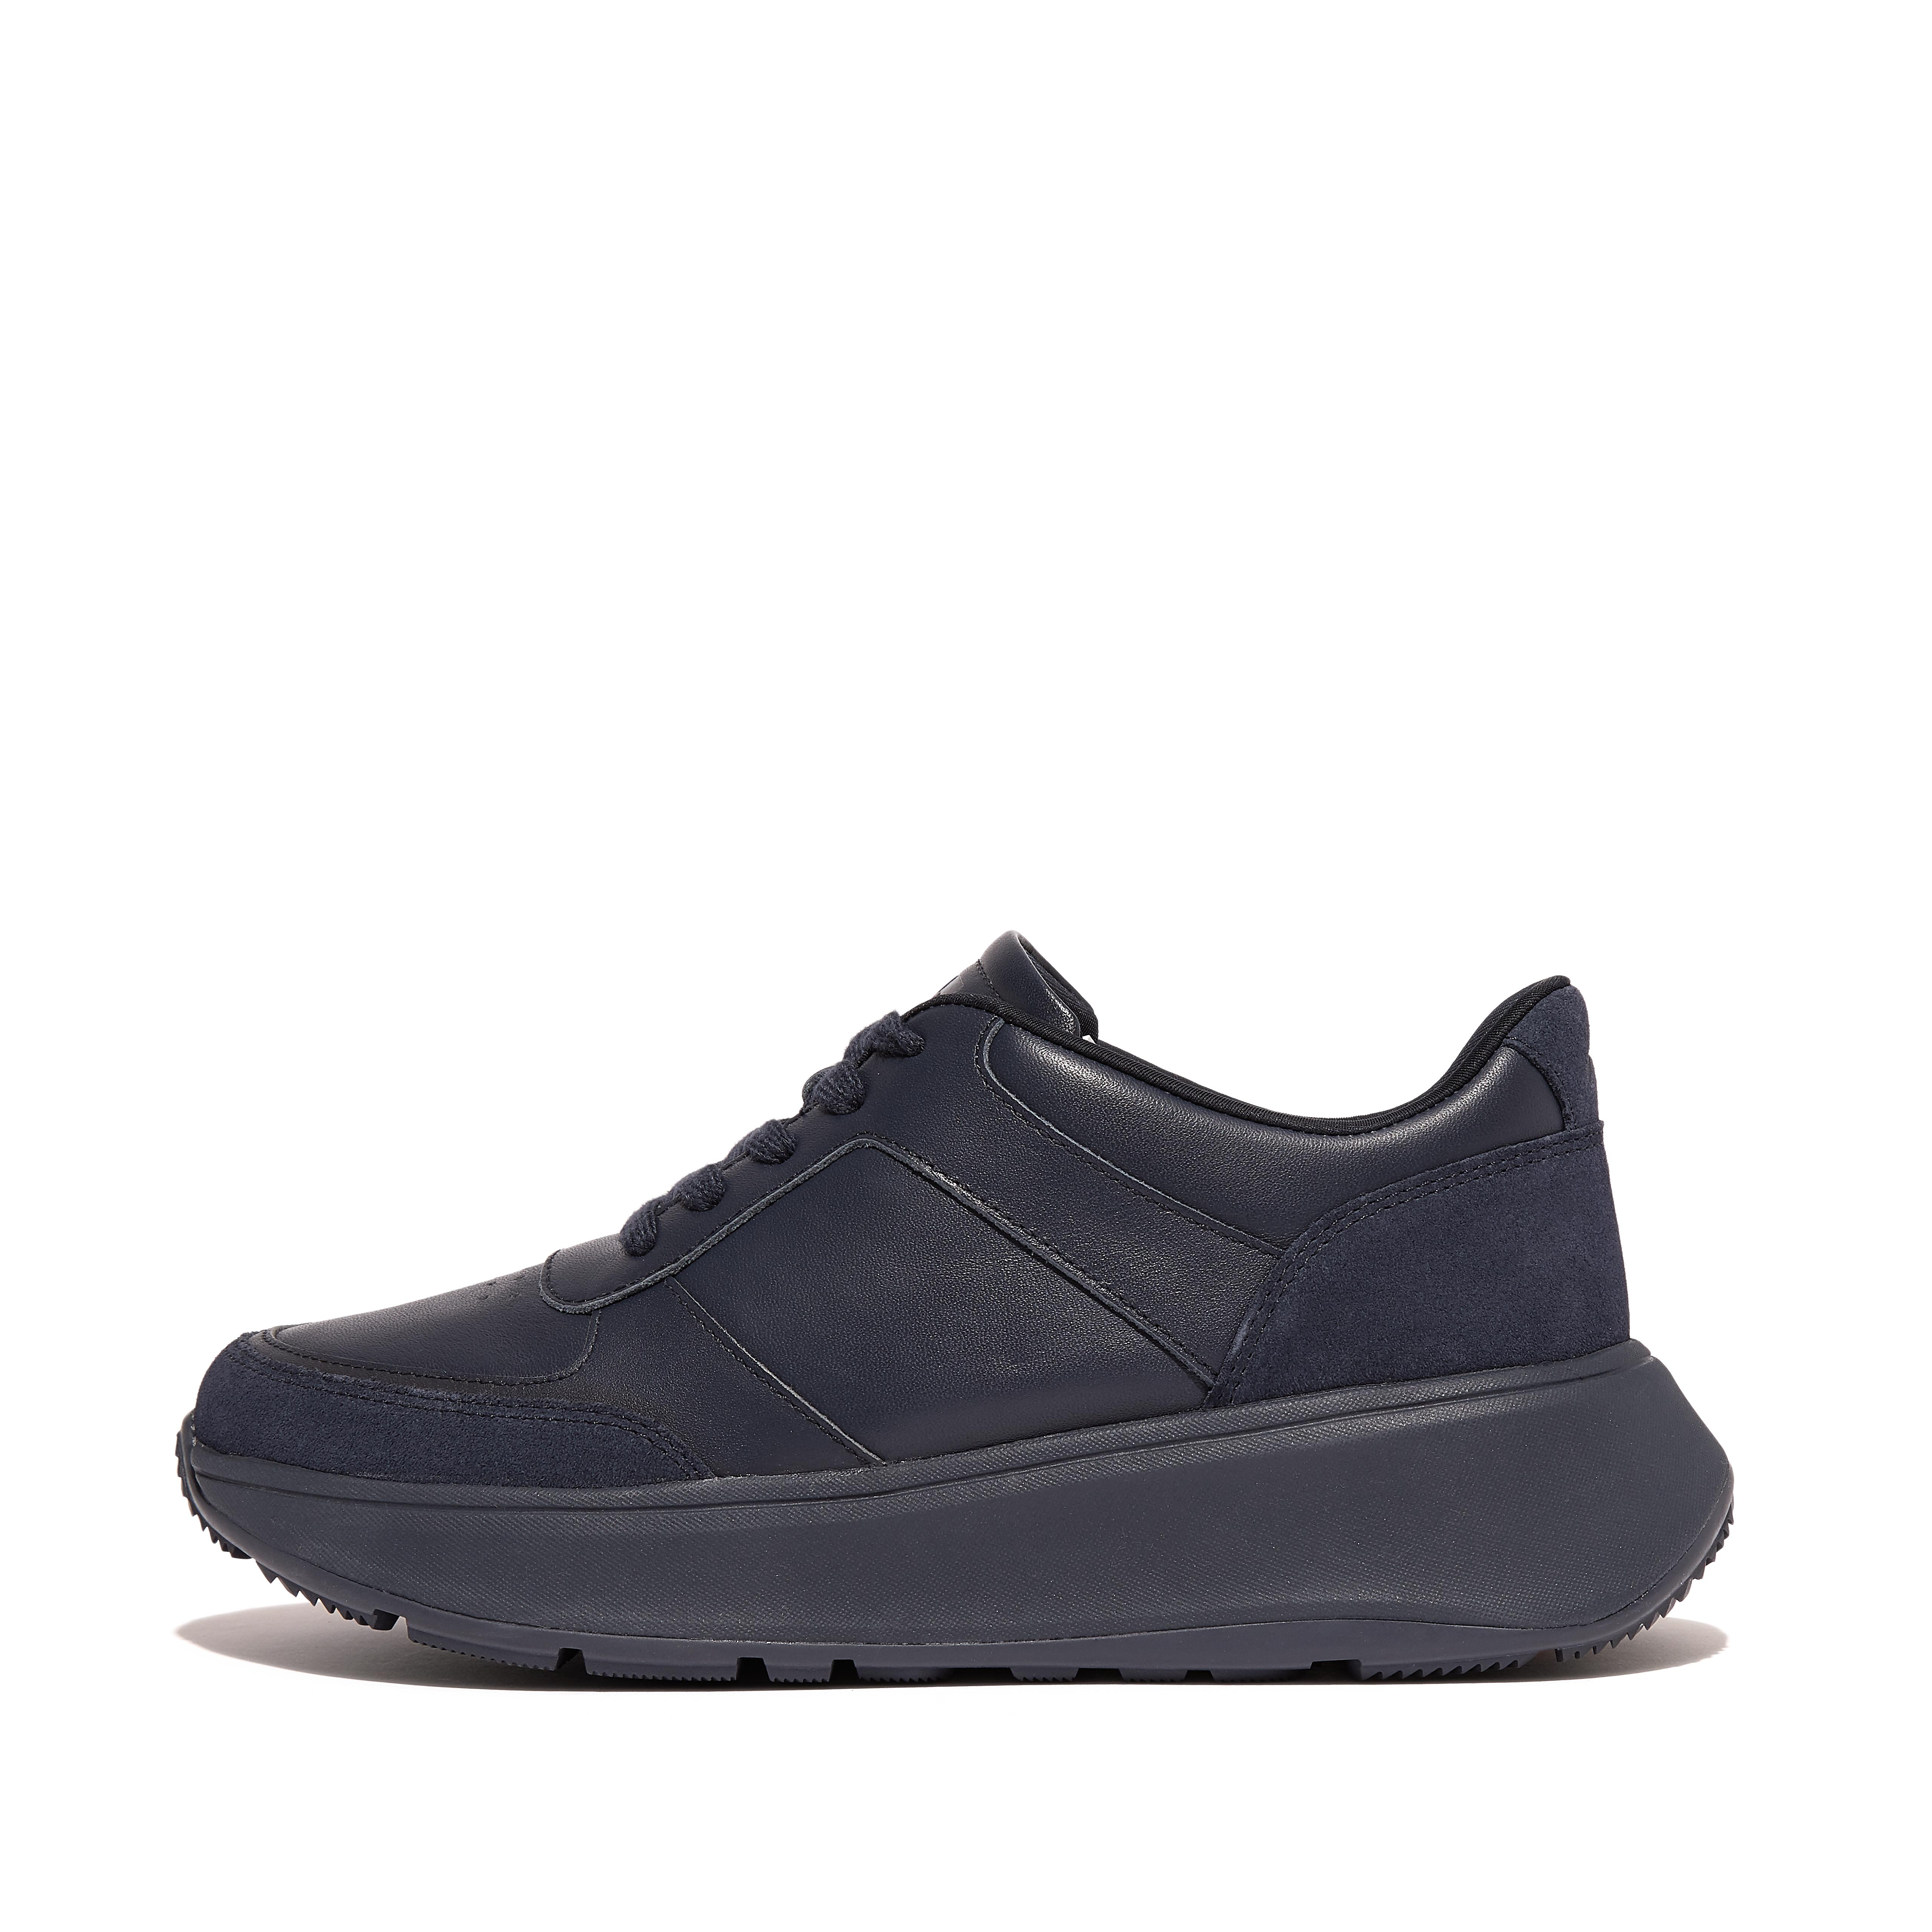 핏플랍 Fitflop Leather/Suede Flatform Sneakers,All Navy